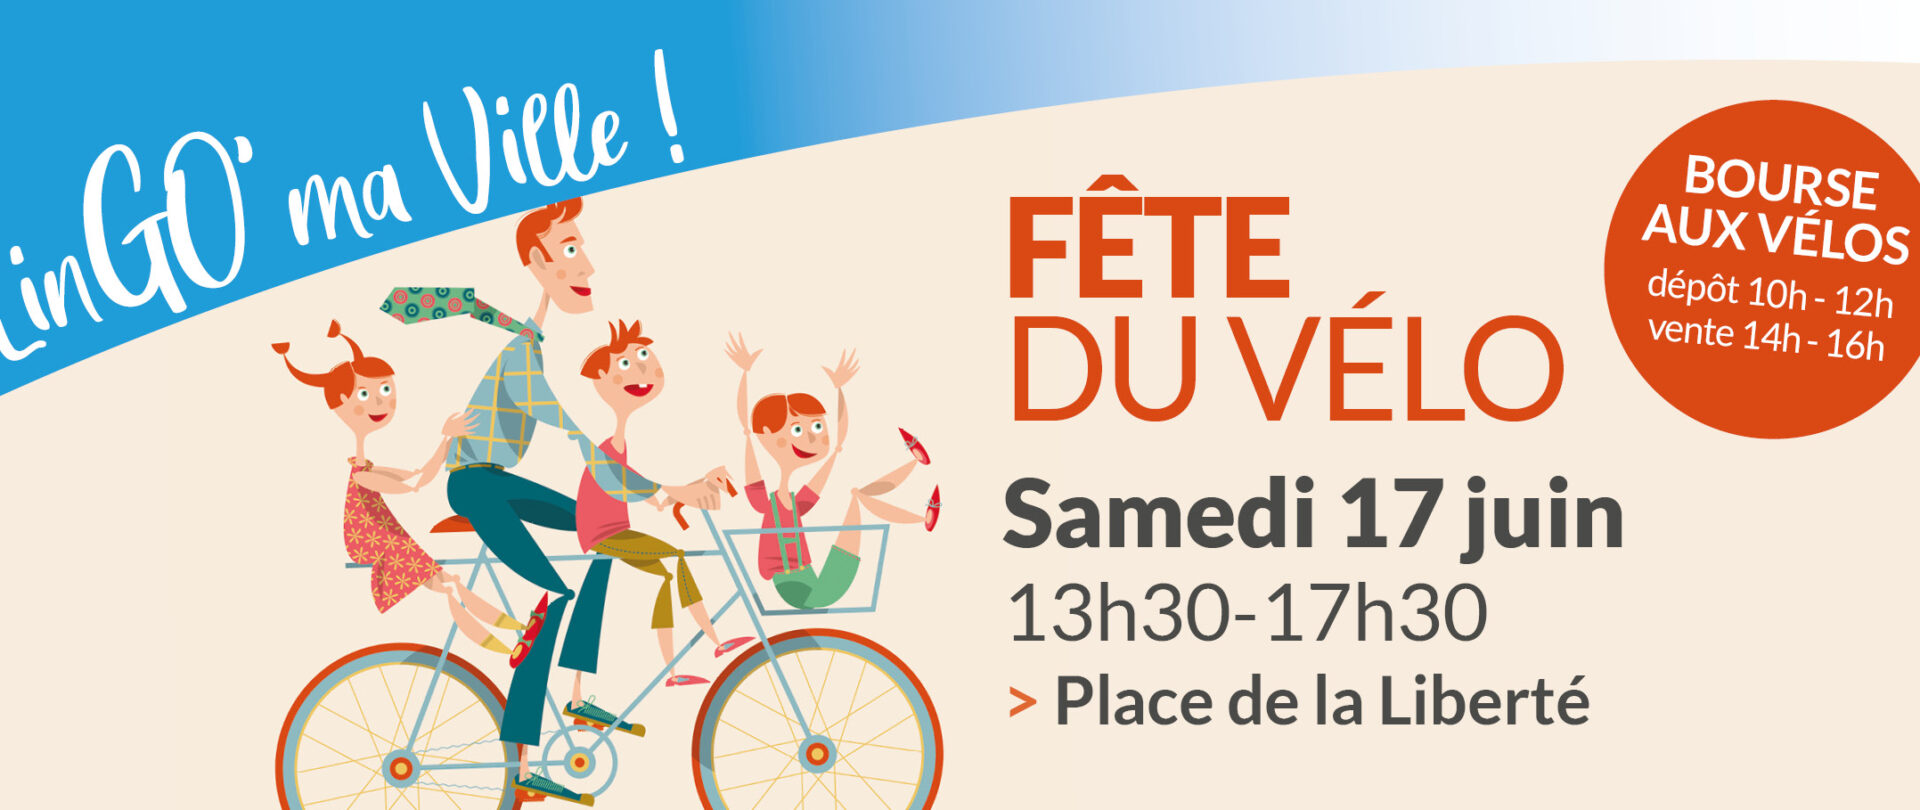 Troisième édition de la Fête du vélo samedi 17 juin !